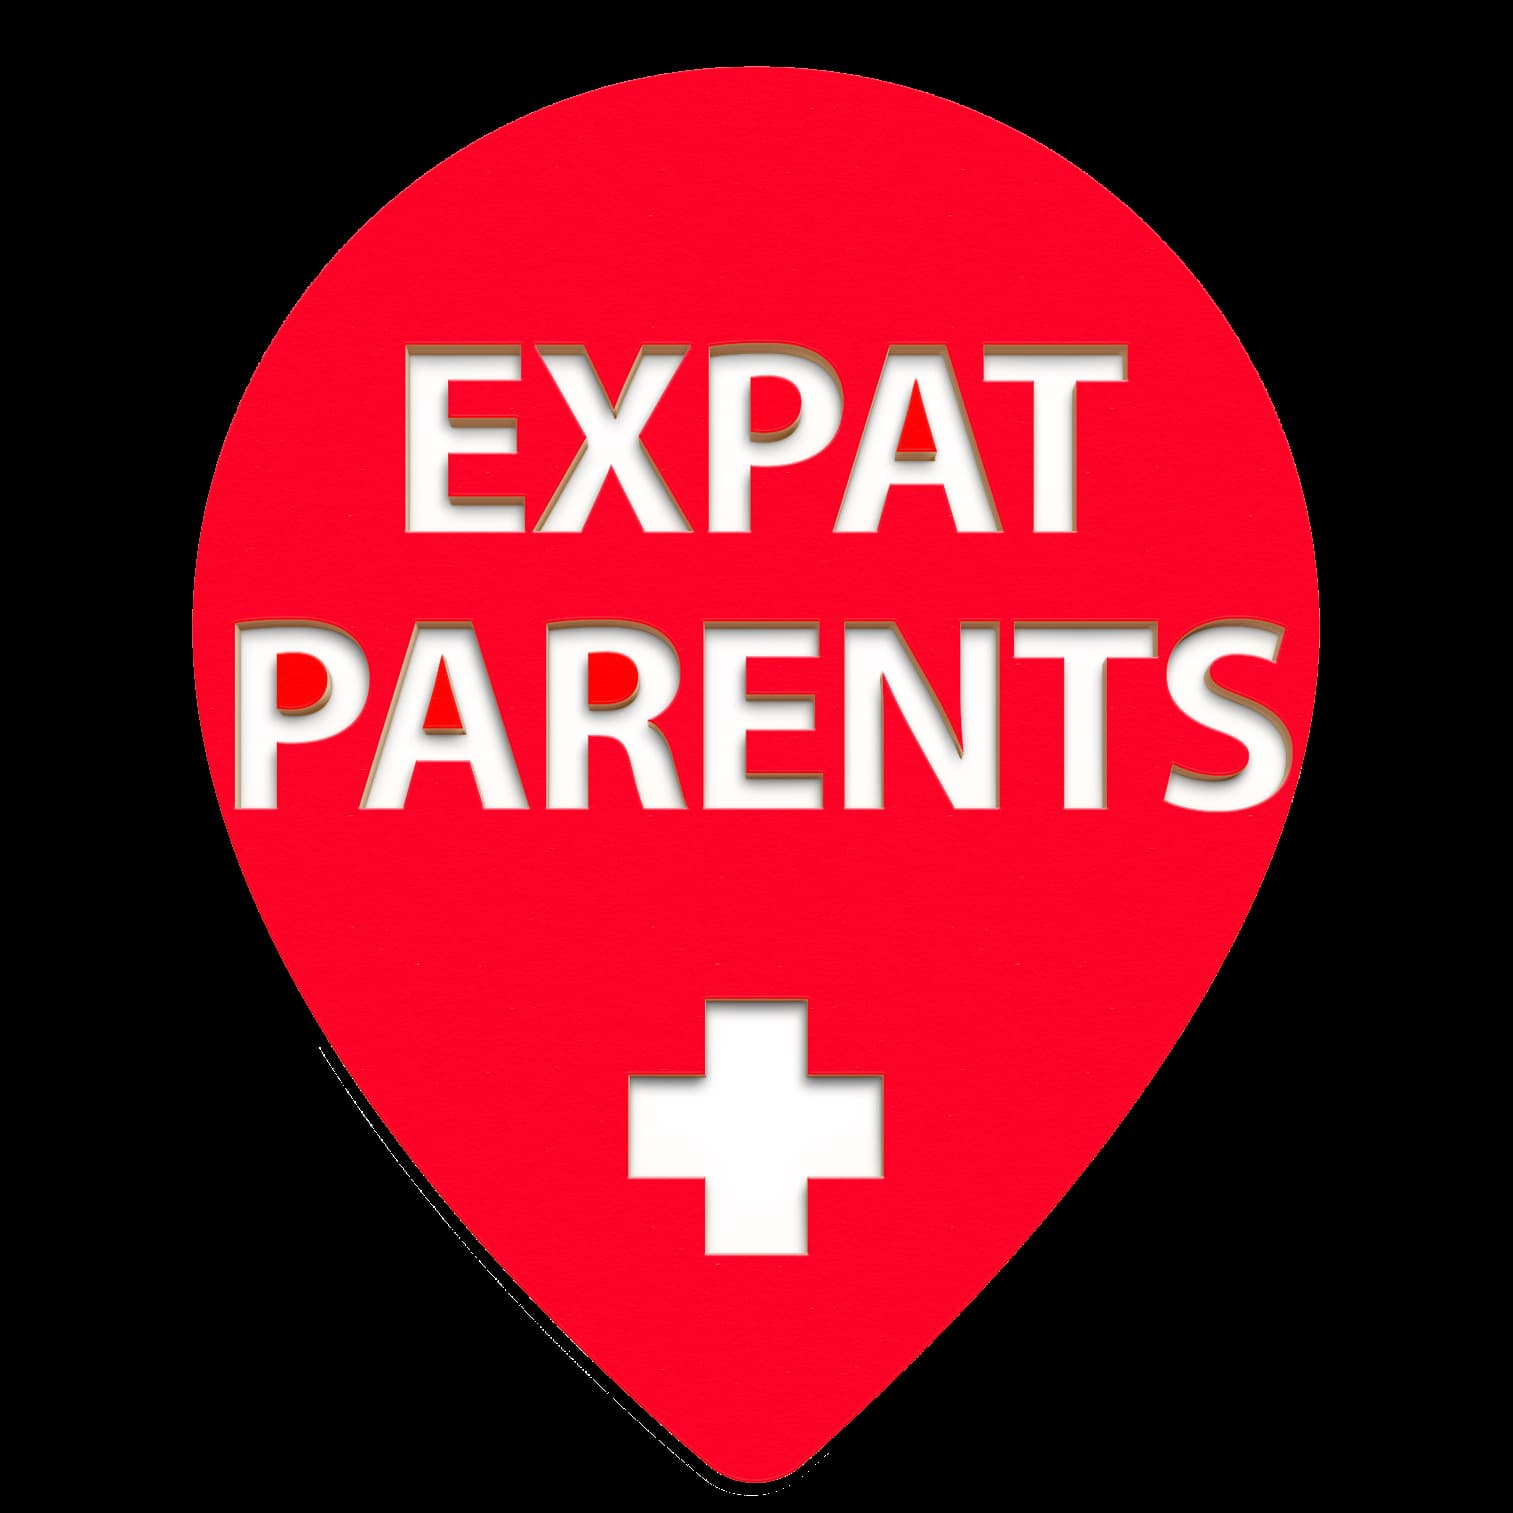 EXPAT PARENTS